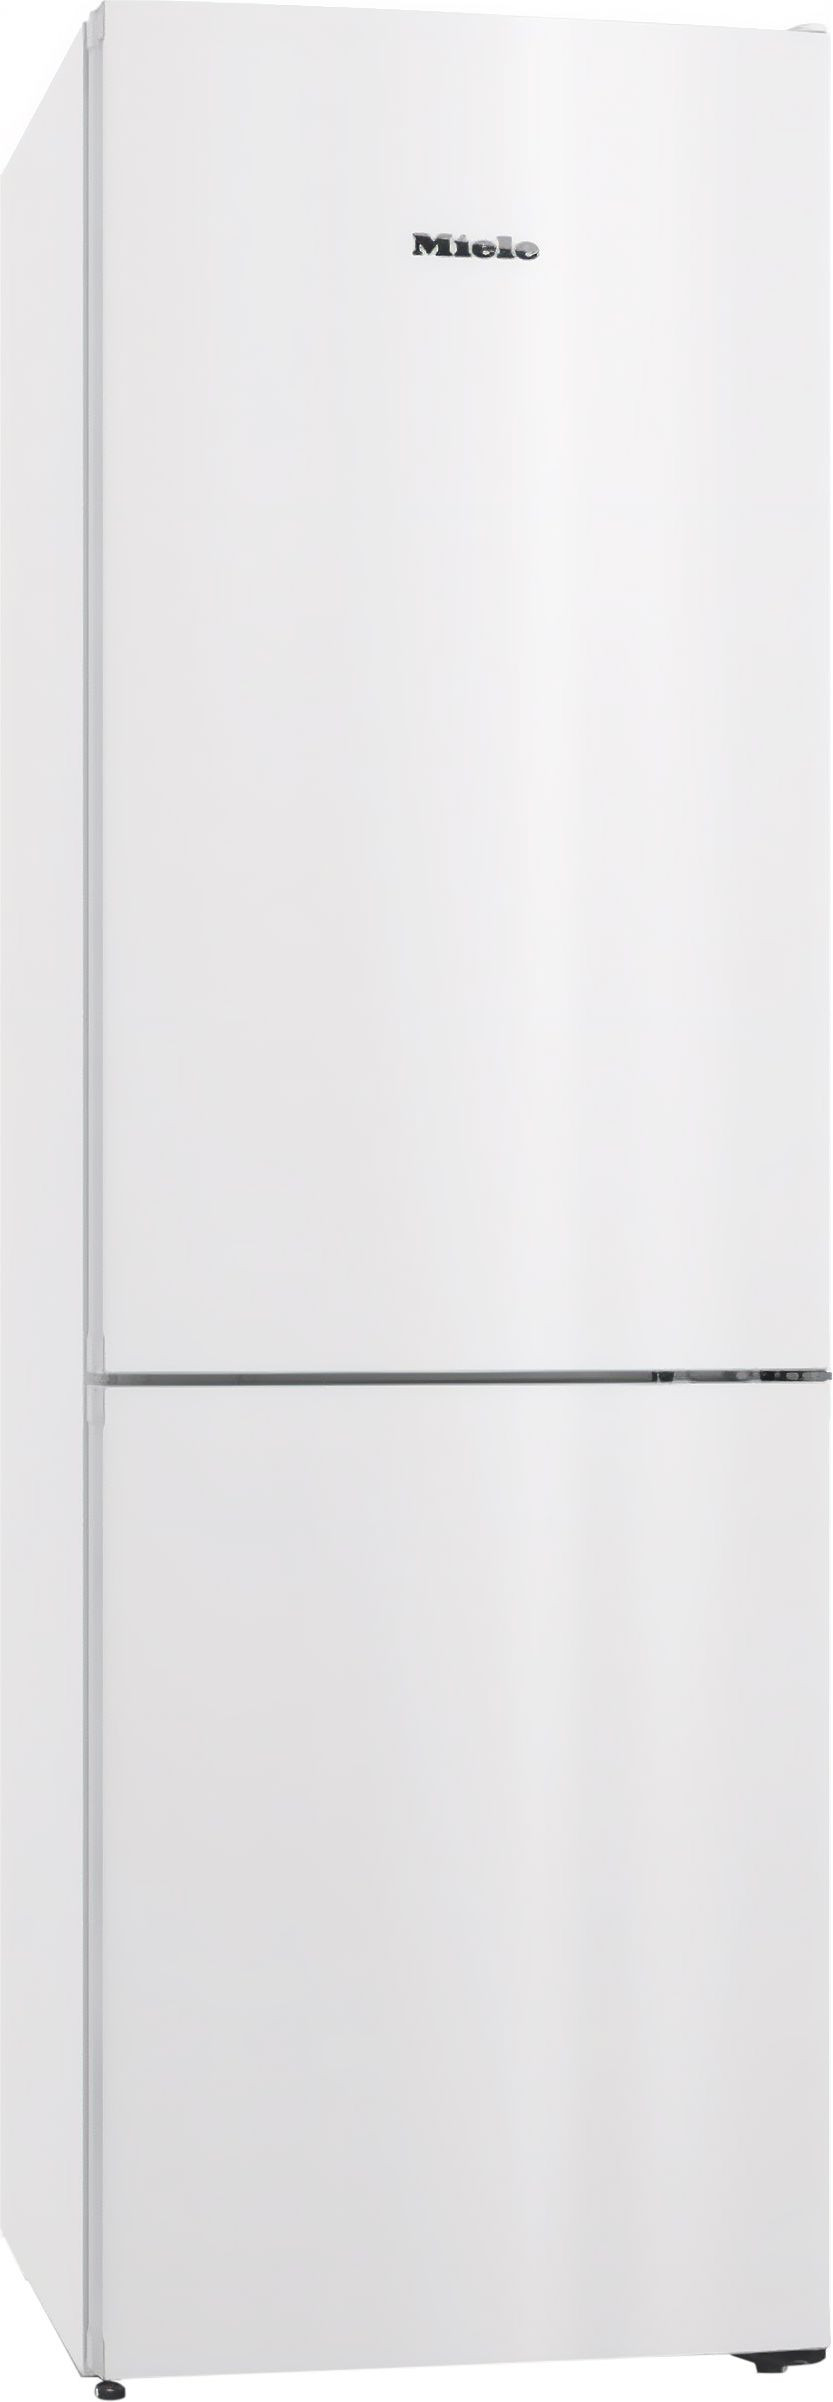 Miele KFN4374 70/30 Frost Free Fridge Freezer - White - E Rated, White